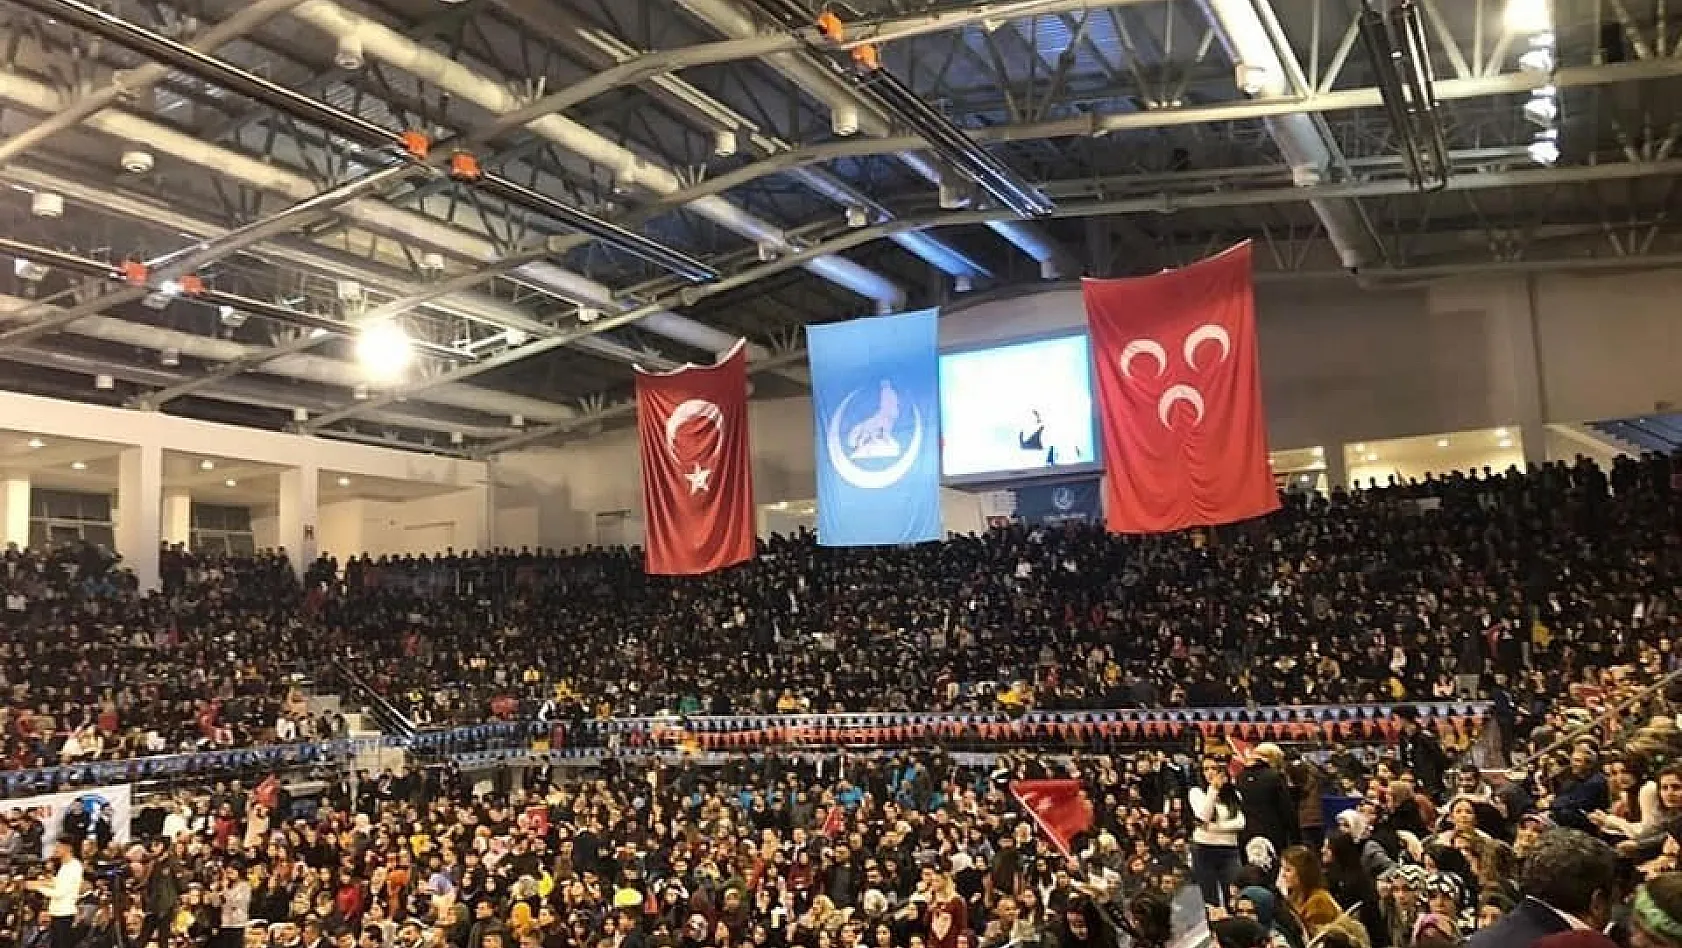 Malatya'da 'Türkü Sev, Türkçe Yaşa'  etkinliği düzenlendi 